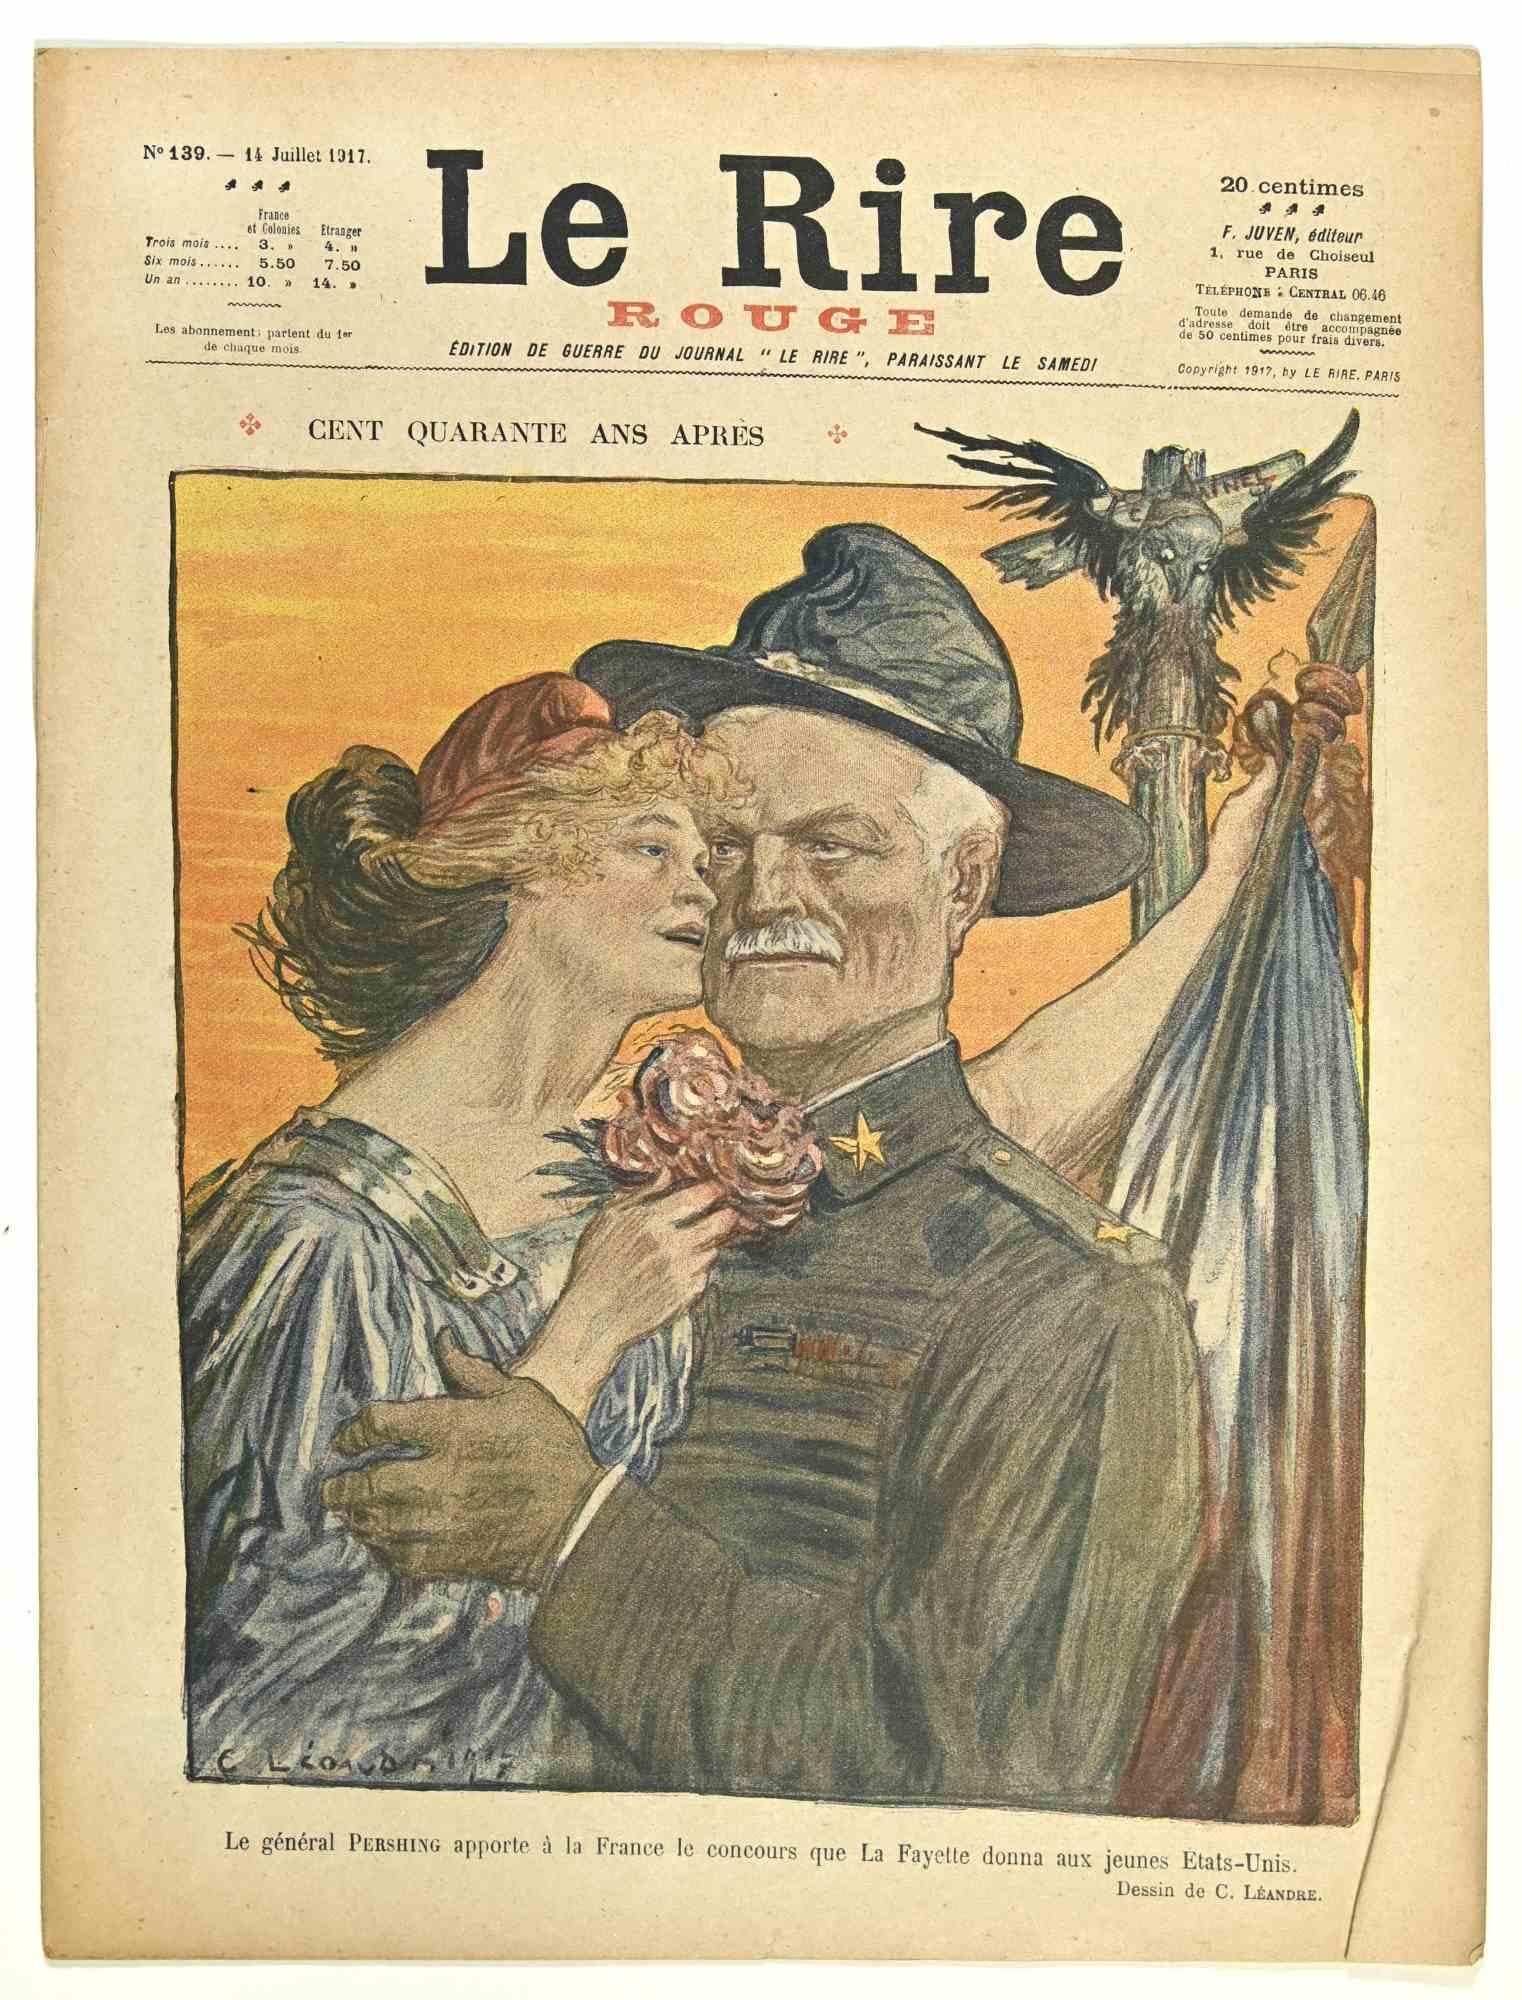 Le Rire - Vintage Comic Magazine - 1917 - Art by Charles Léandre